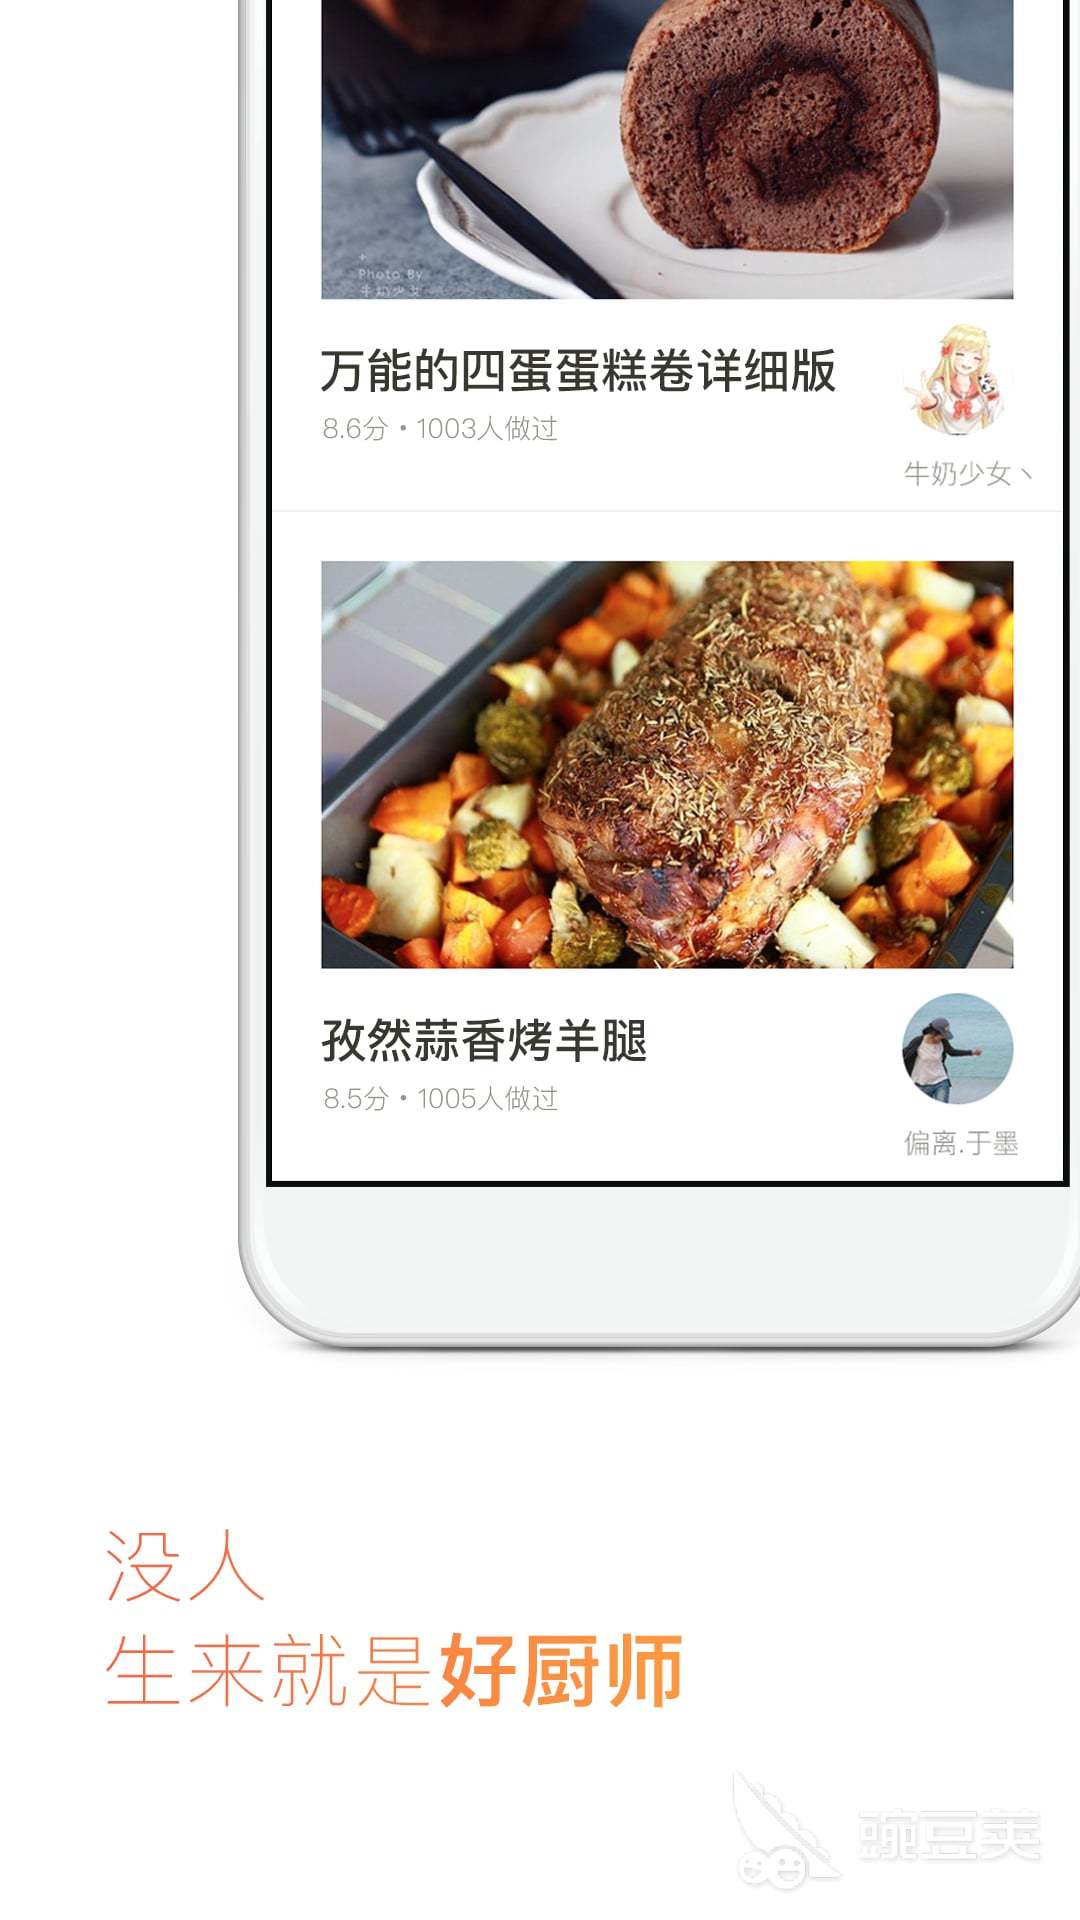 煮菜app下载免费大全2022 煮菜app排行